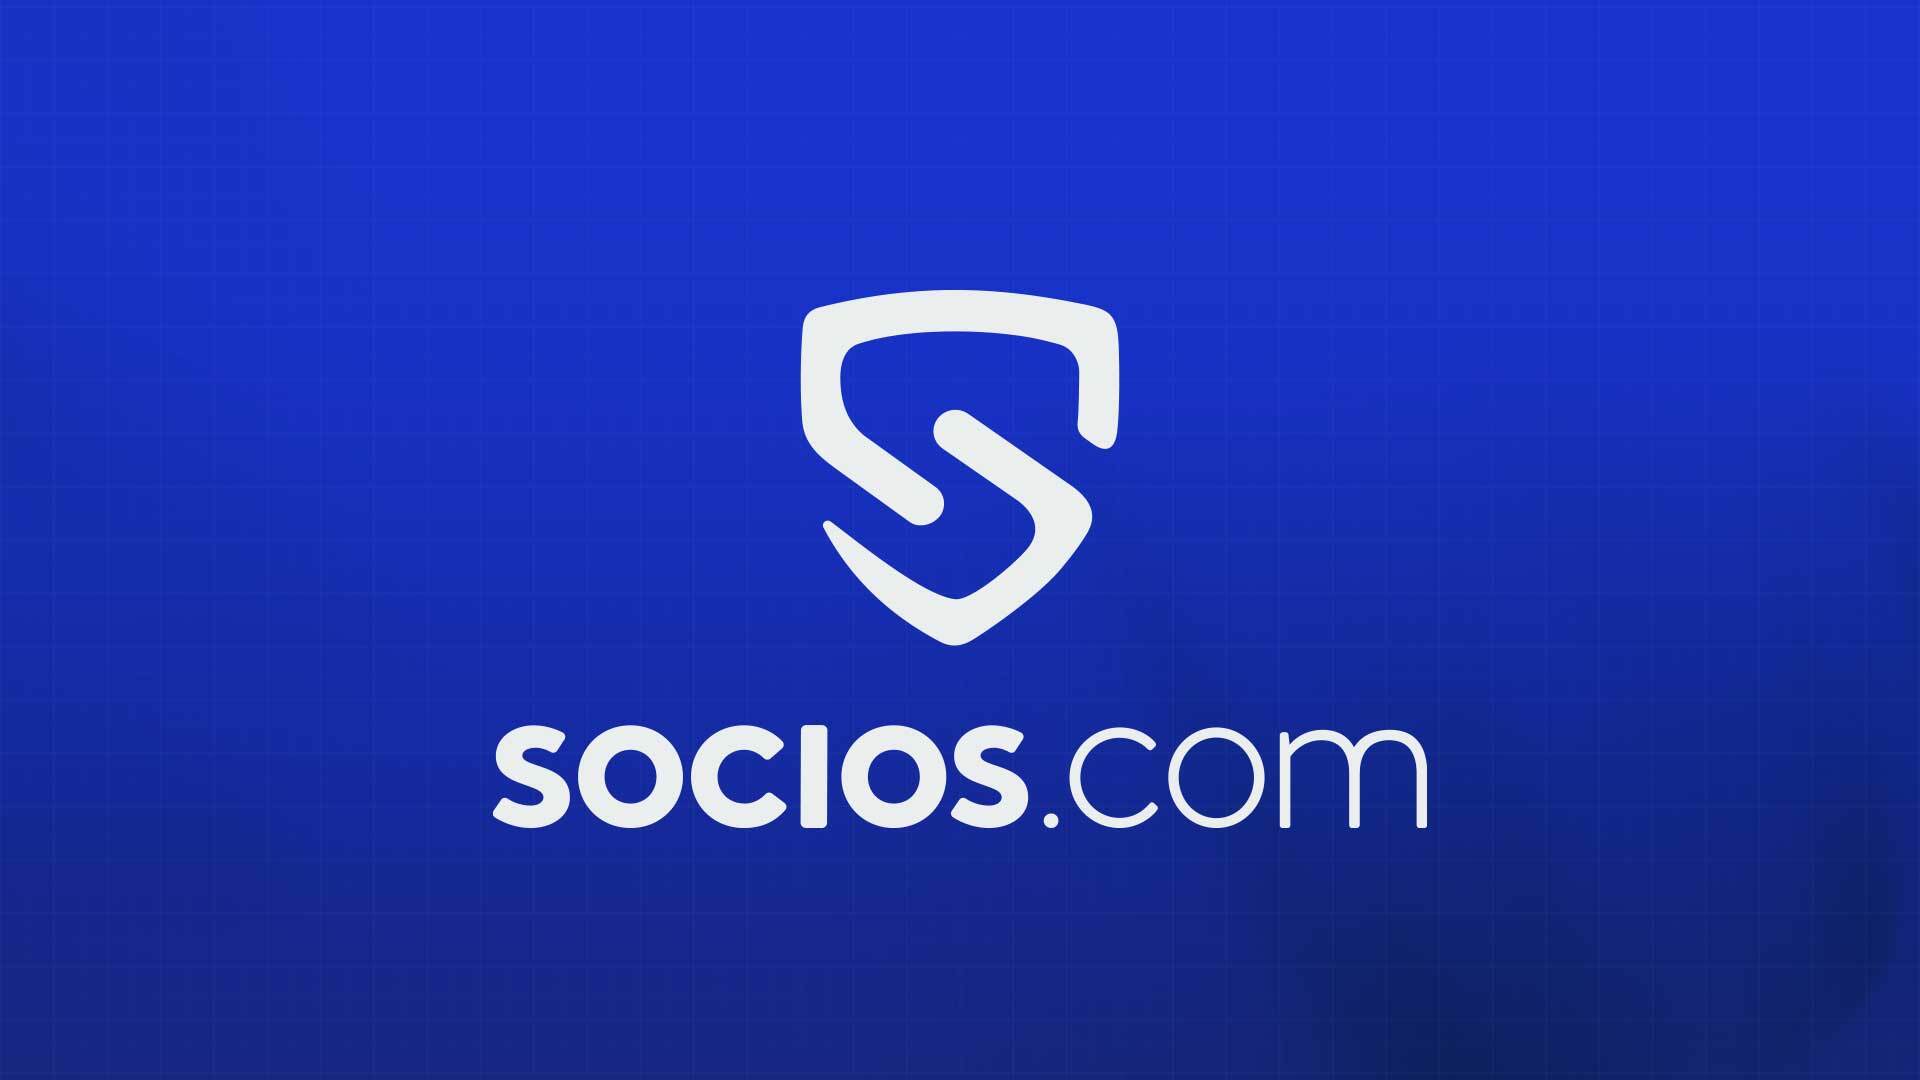 Socios.com дэвшилтэт функцуудаар фэнүүдийн оролцоог хэрхэн нэмэгдүүлж байна вэ?